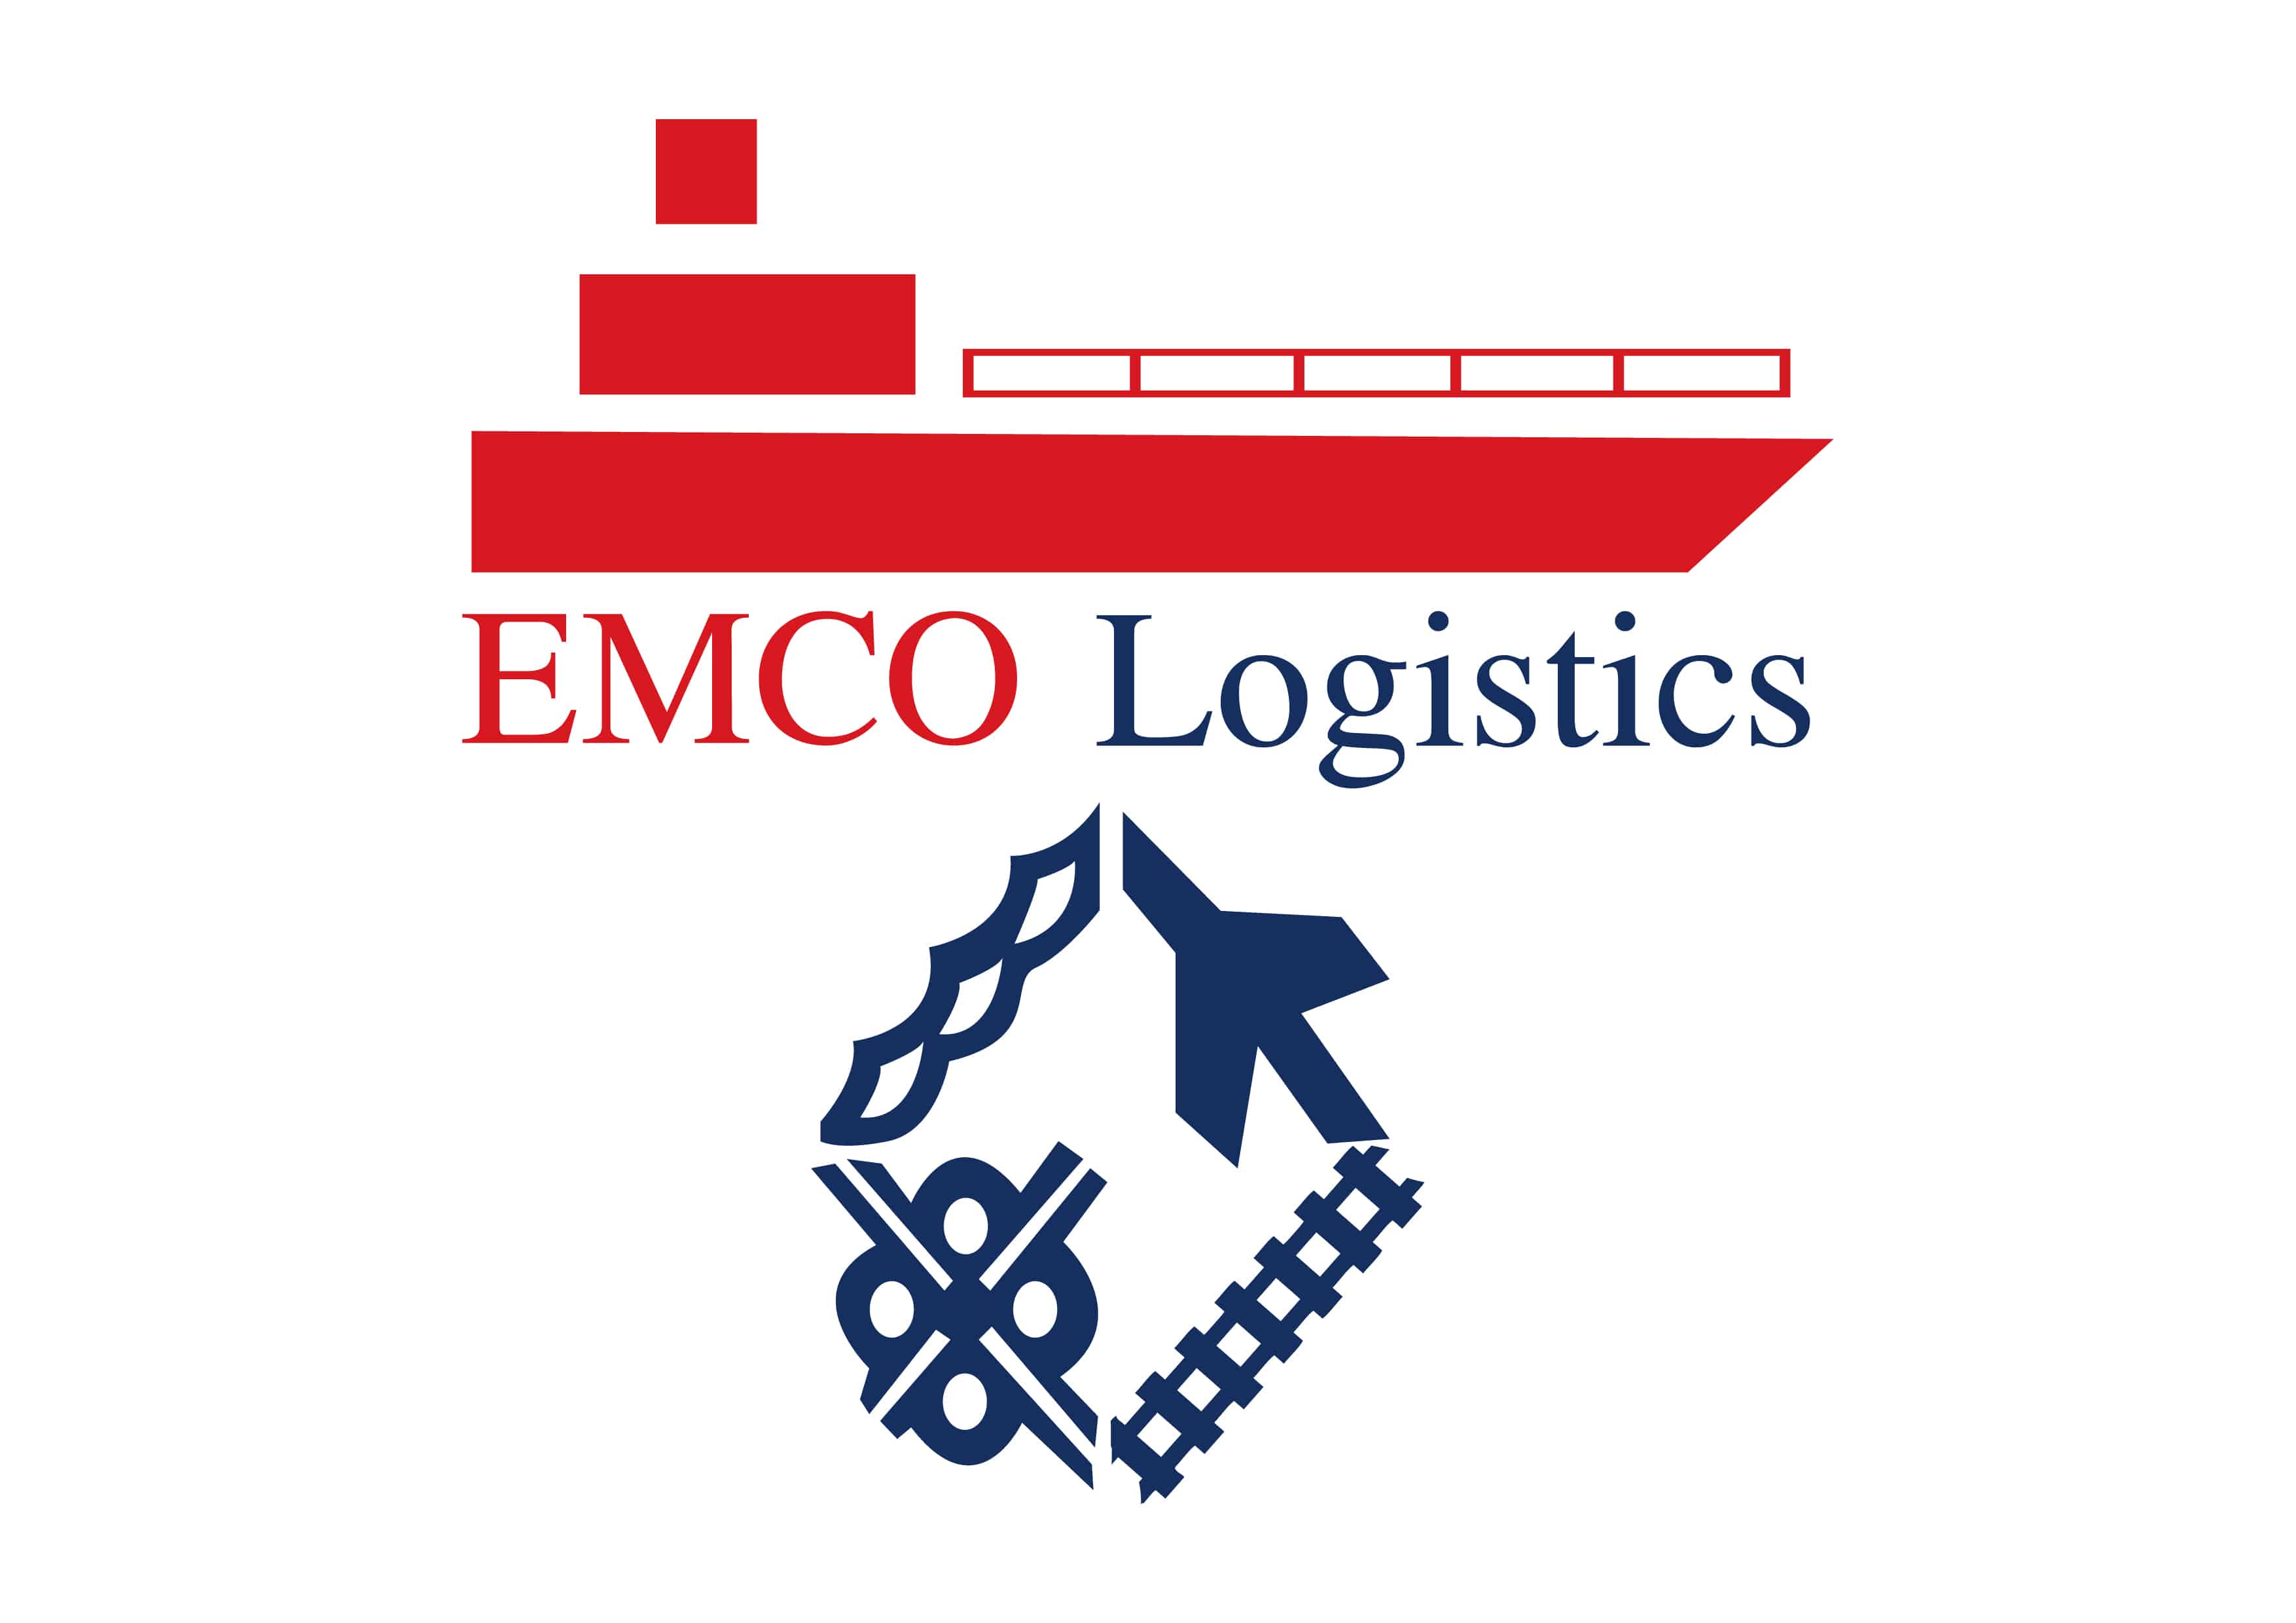 EMCO Logistics